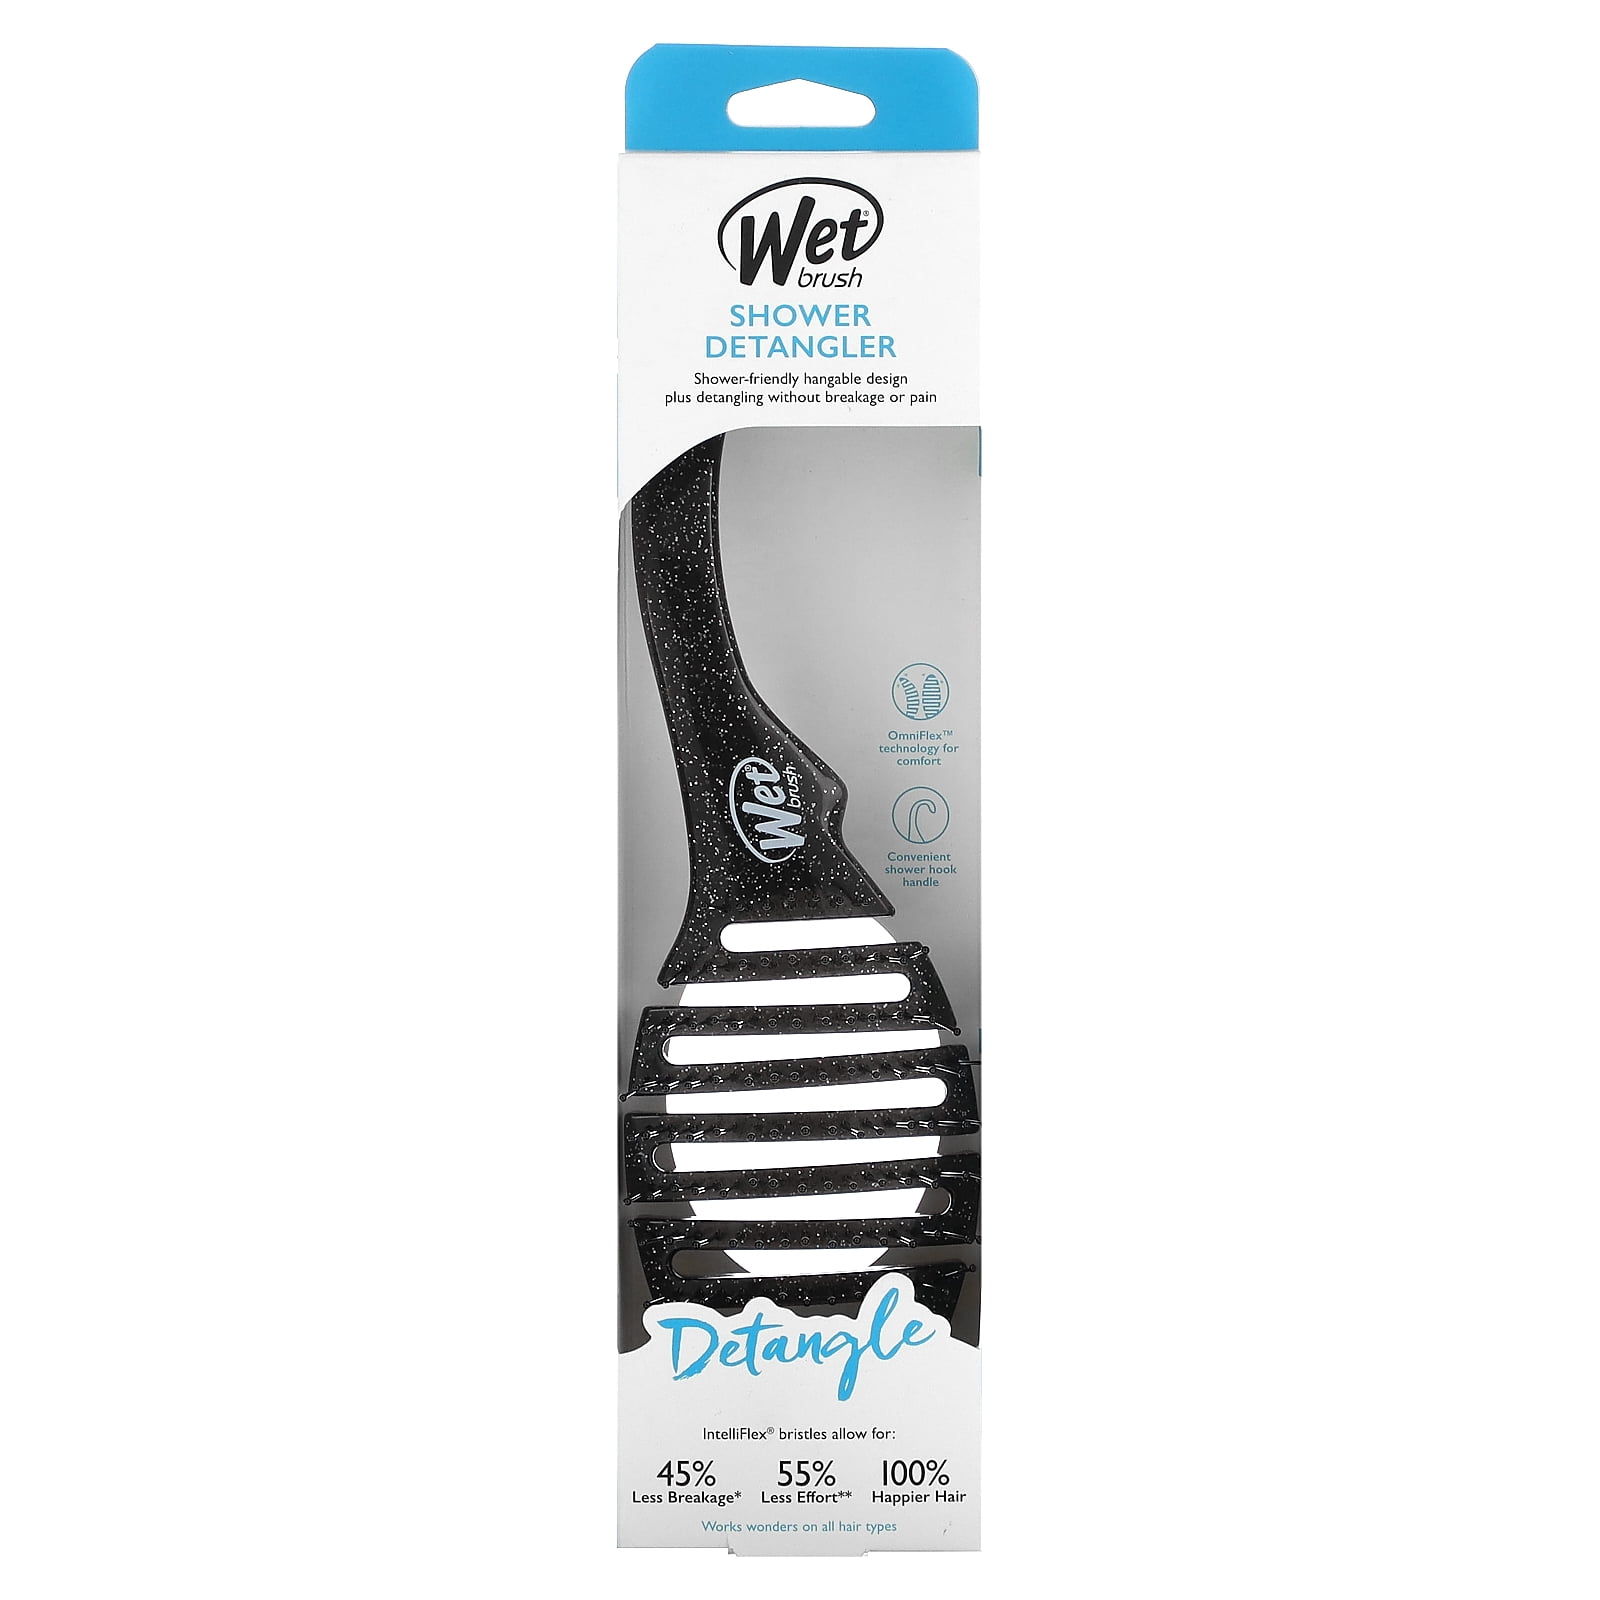 Wet Brush® Limited Edition Original Detangler - Glitter